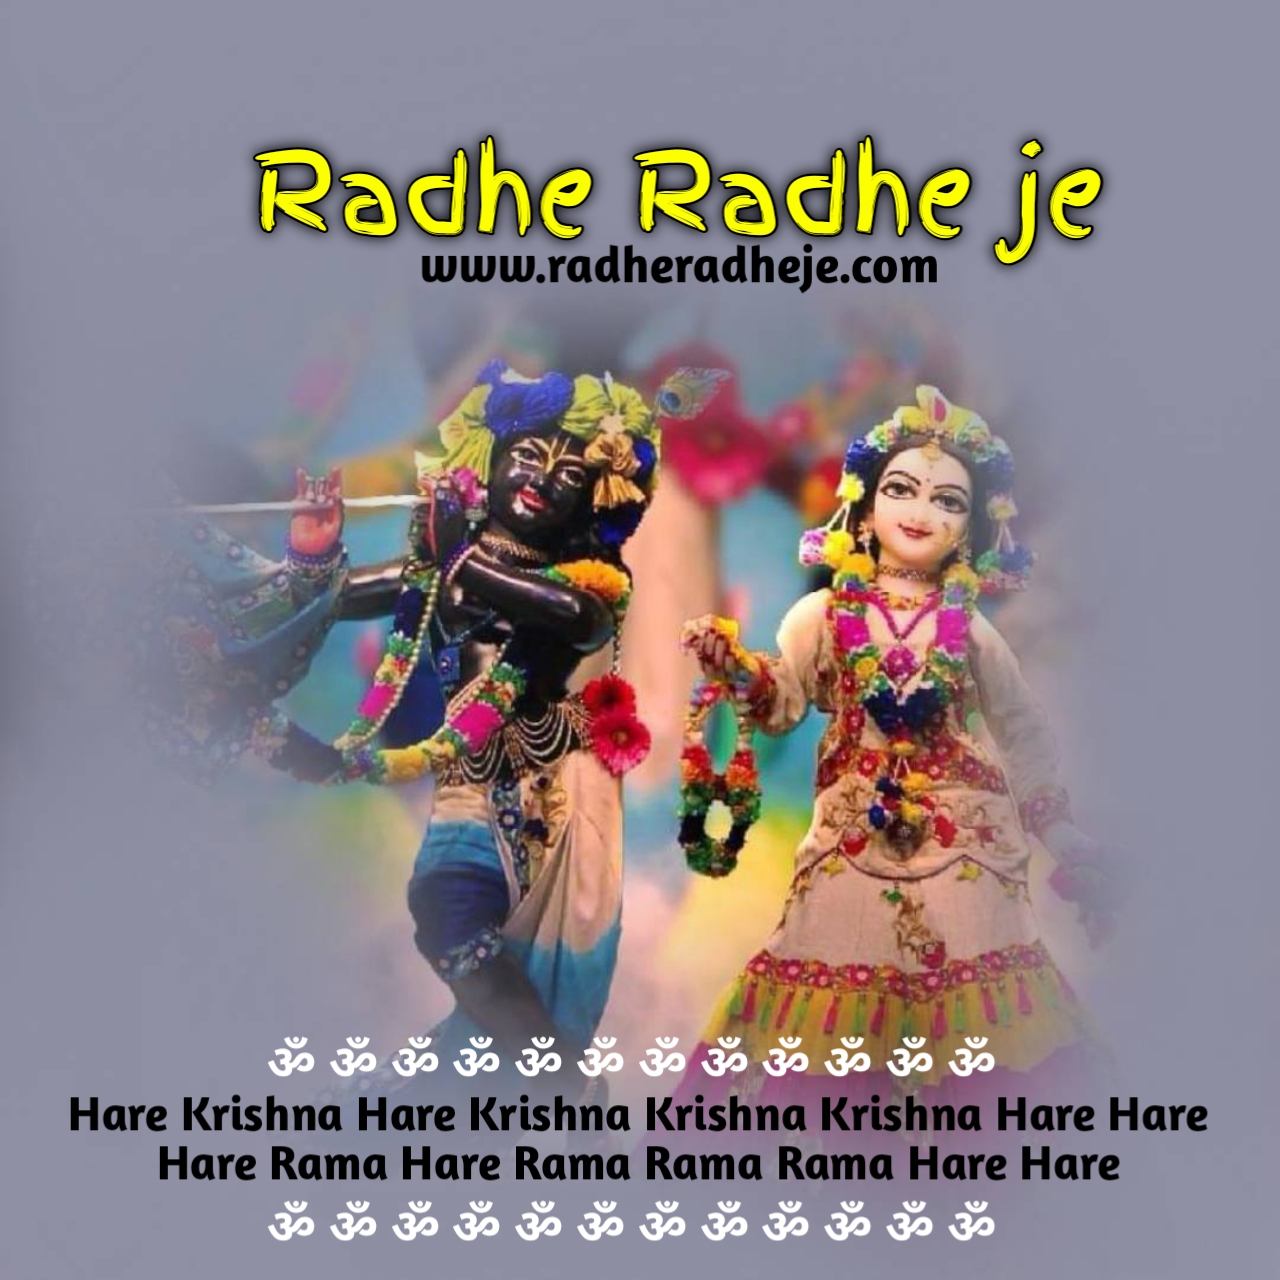 101 Jai Shri krishna Best Good Morning image & Quotes - RadheRadheje